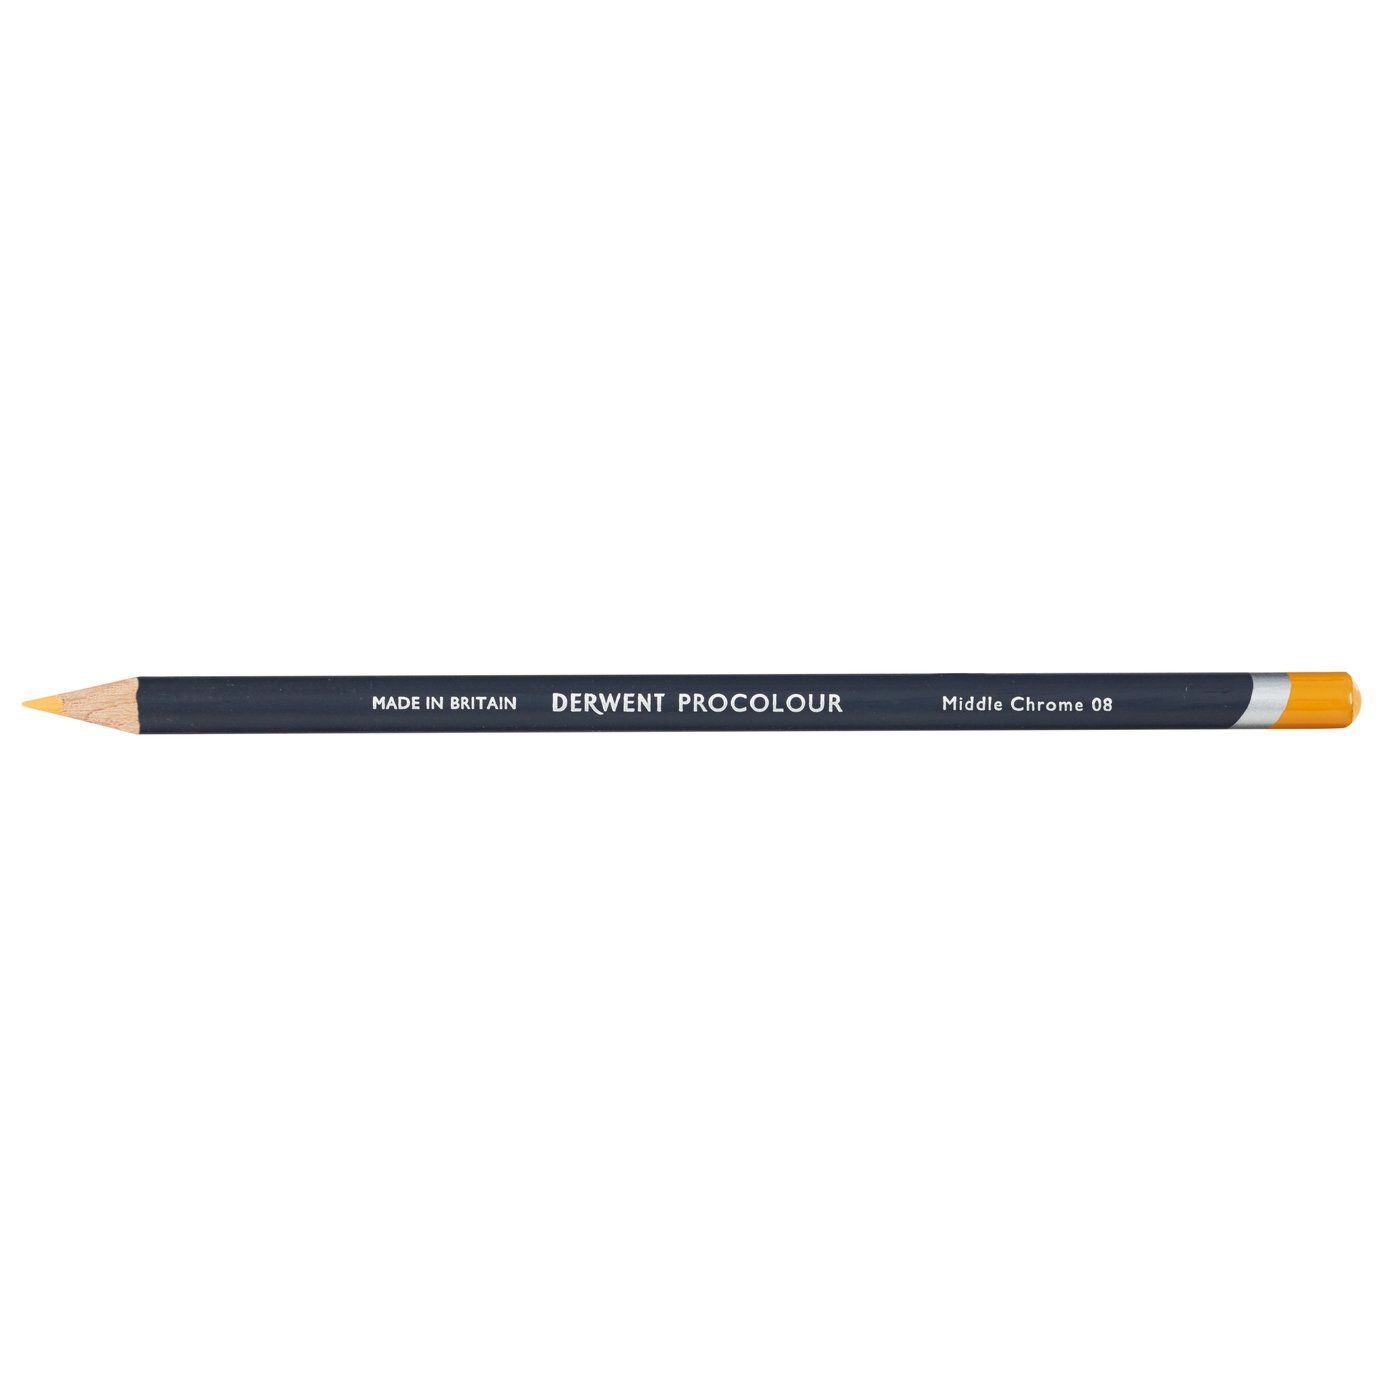 Derwent Procolour Pencil - 08 Middle Chrome